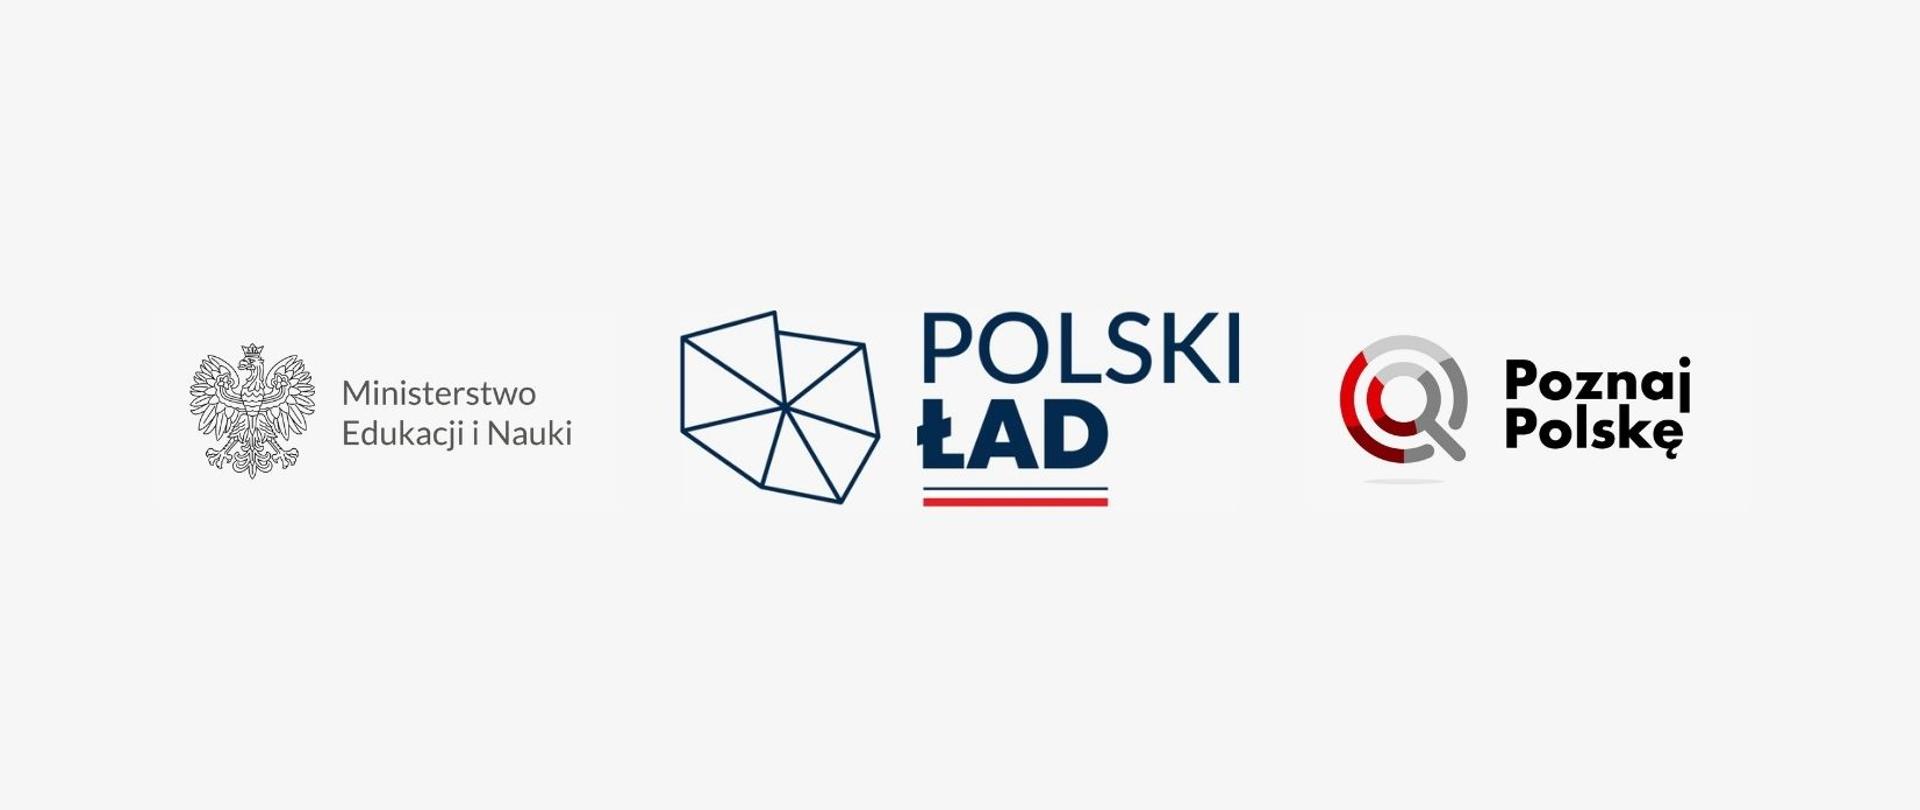 Logotypy: Ministerstwo Edukacji i Nauki, Polski Ład I Poznaj Polskę na białym tle